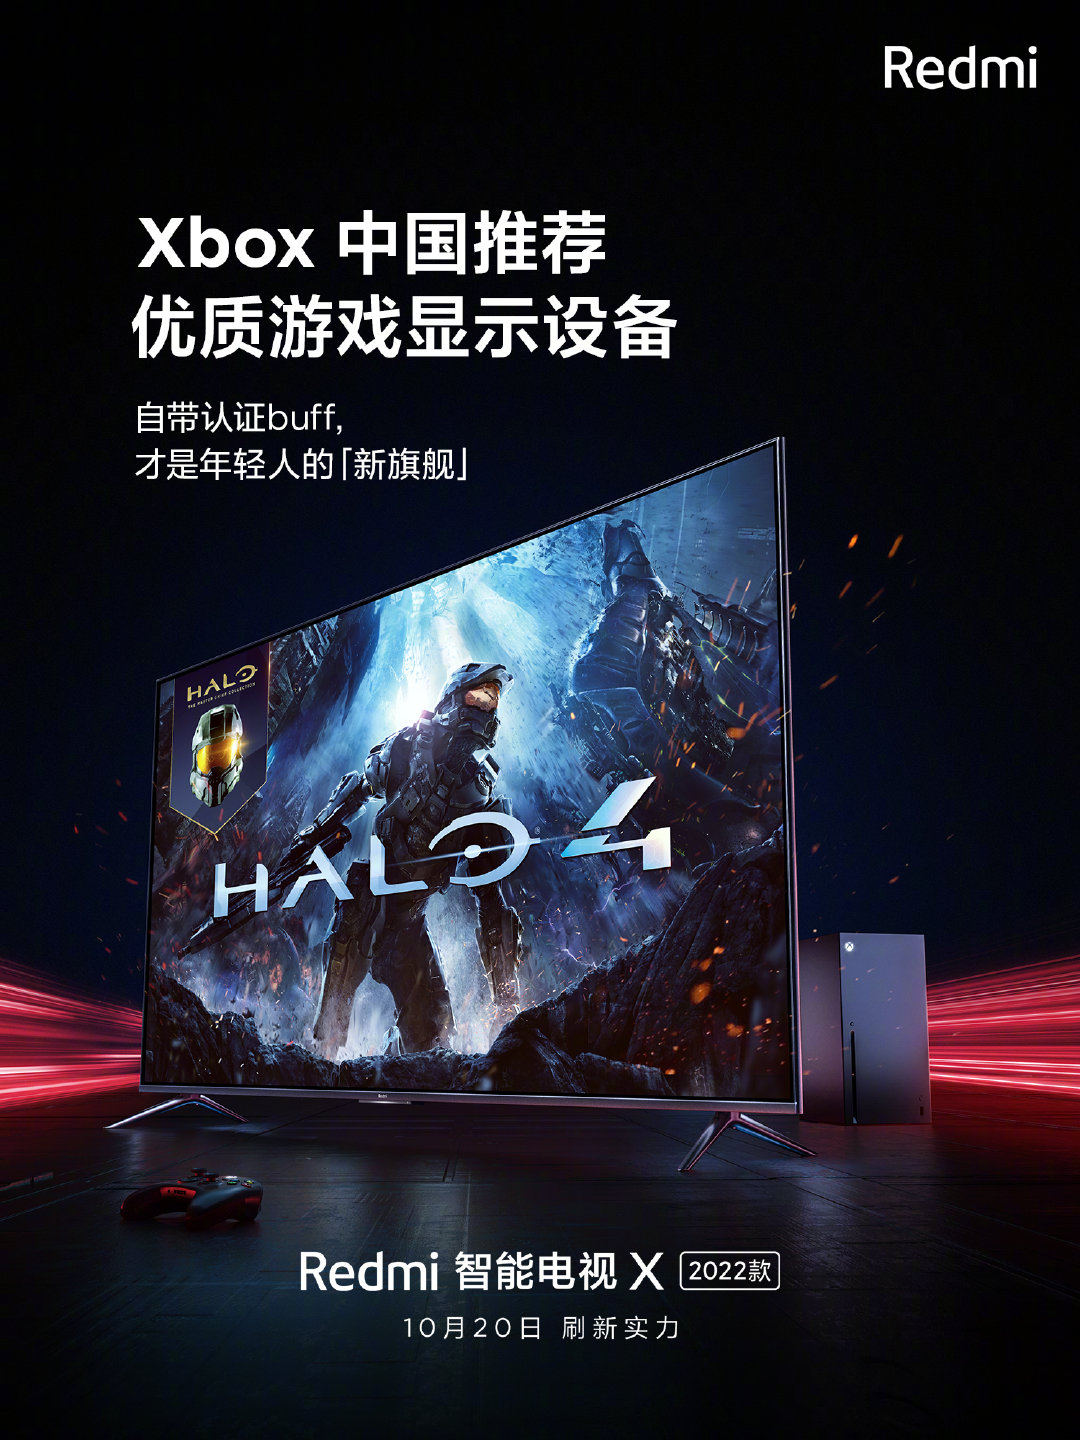 小米2022款Redmi智能电视X明日正式发布 获Xbox中国推荐优质设备截图